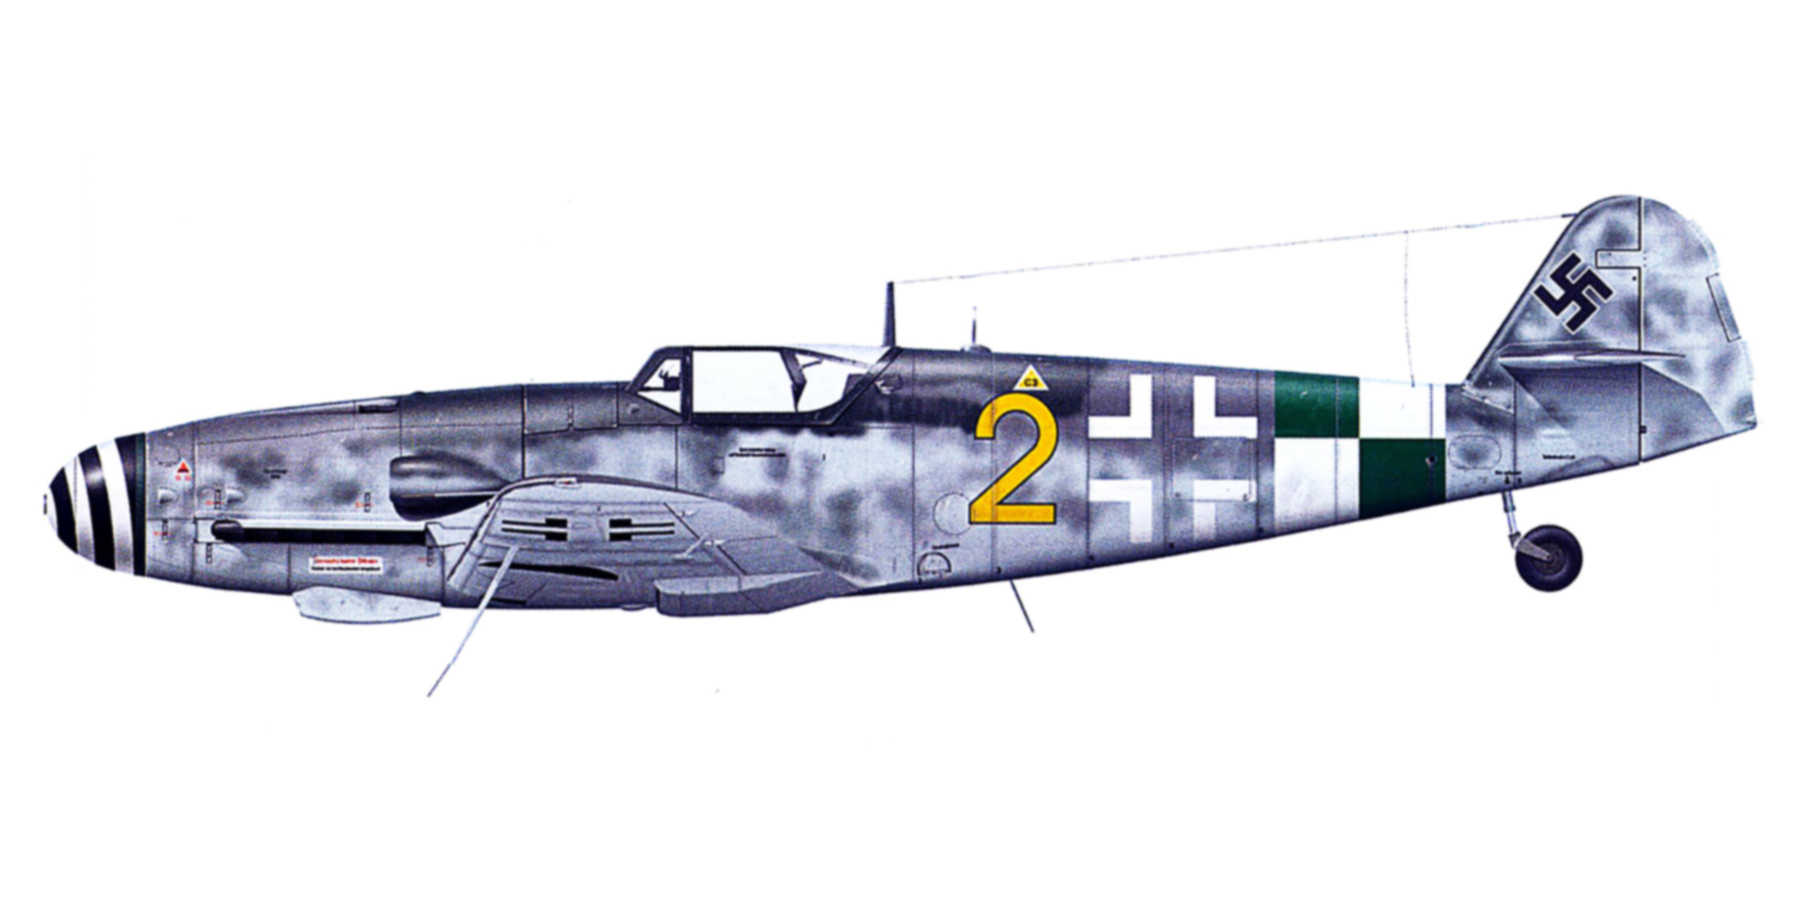 Messerschmitt Bf 109G10 Erla KG(J)27 Yellow 2 Kaufberen Germany May 1945 0A